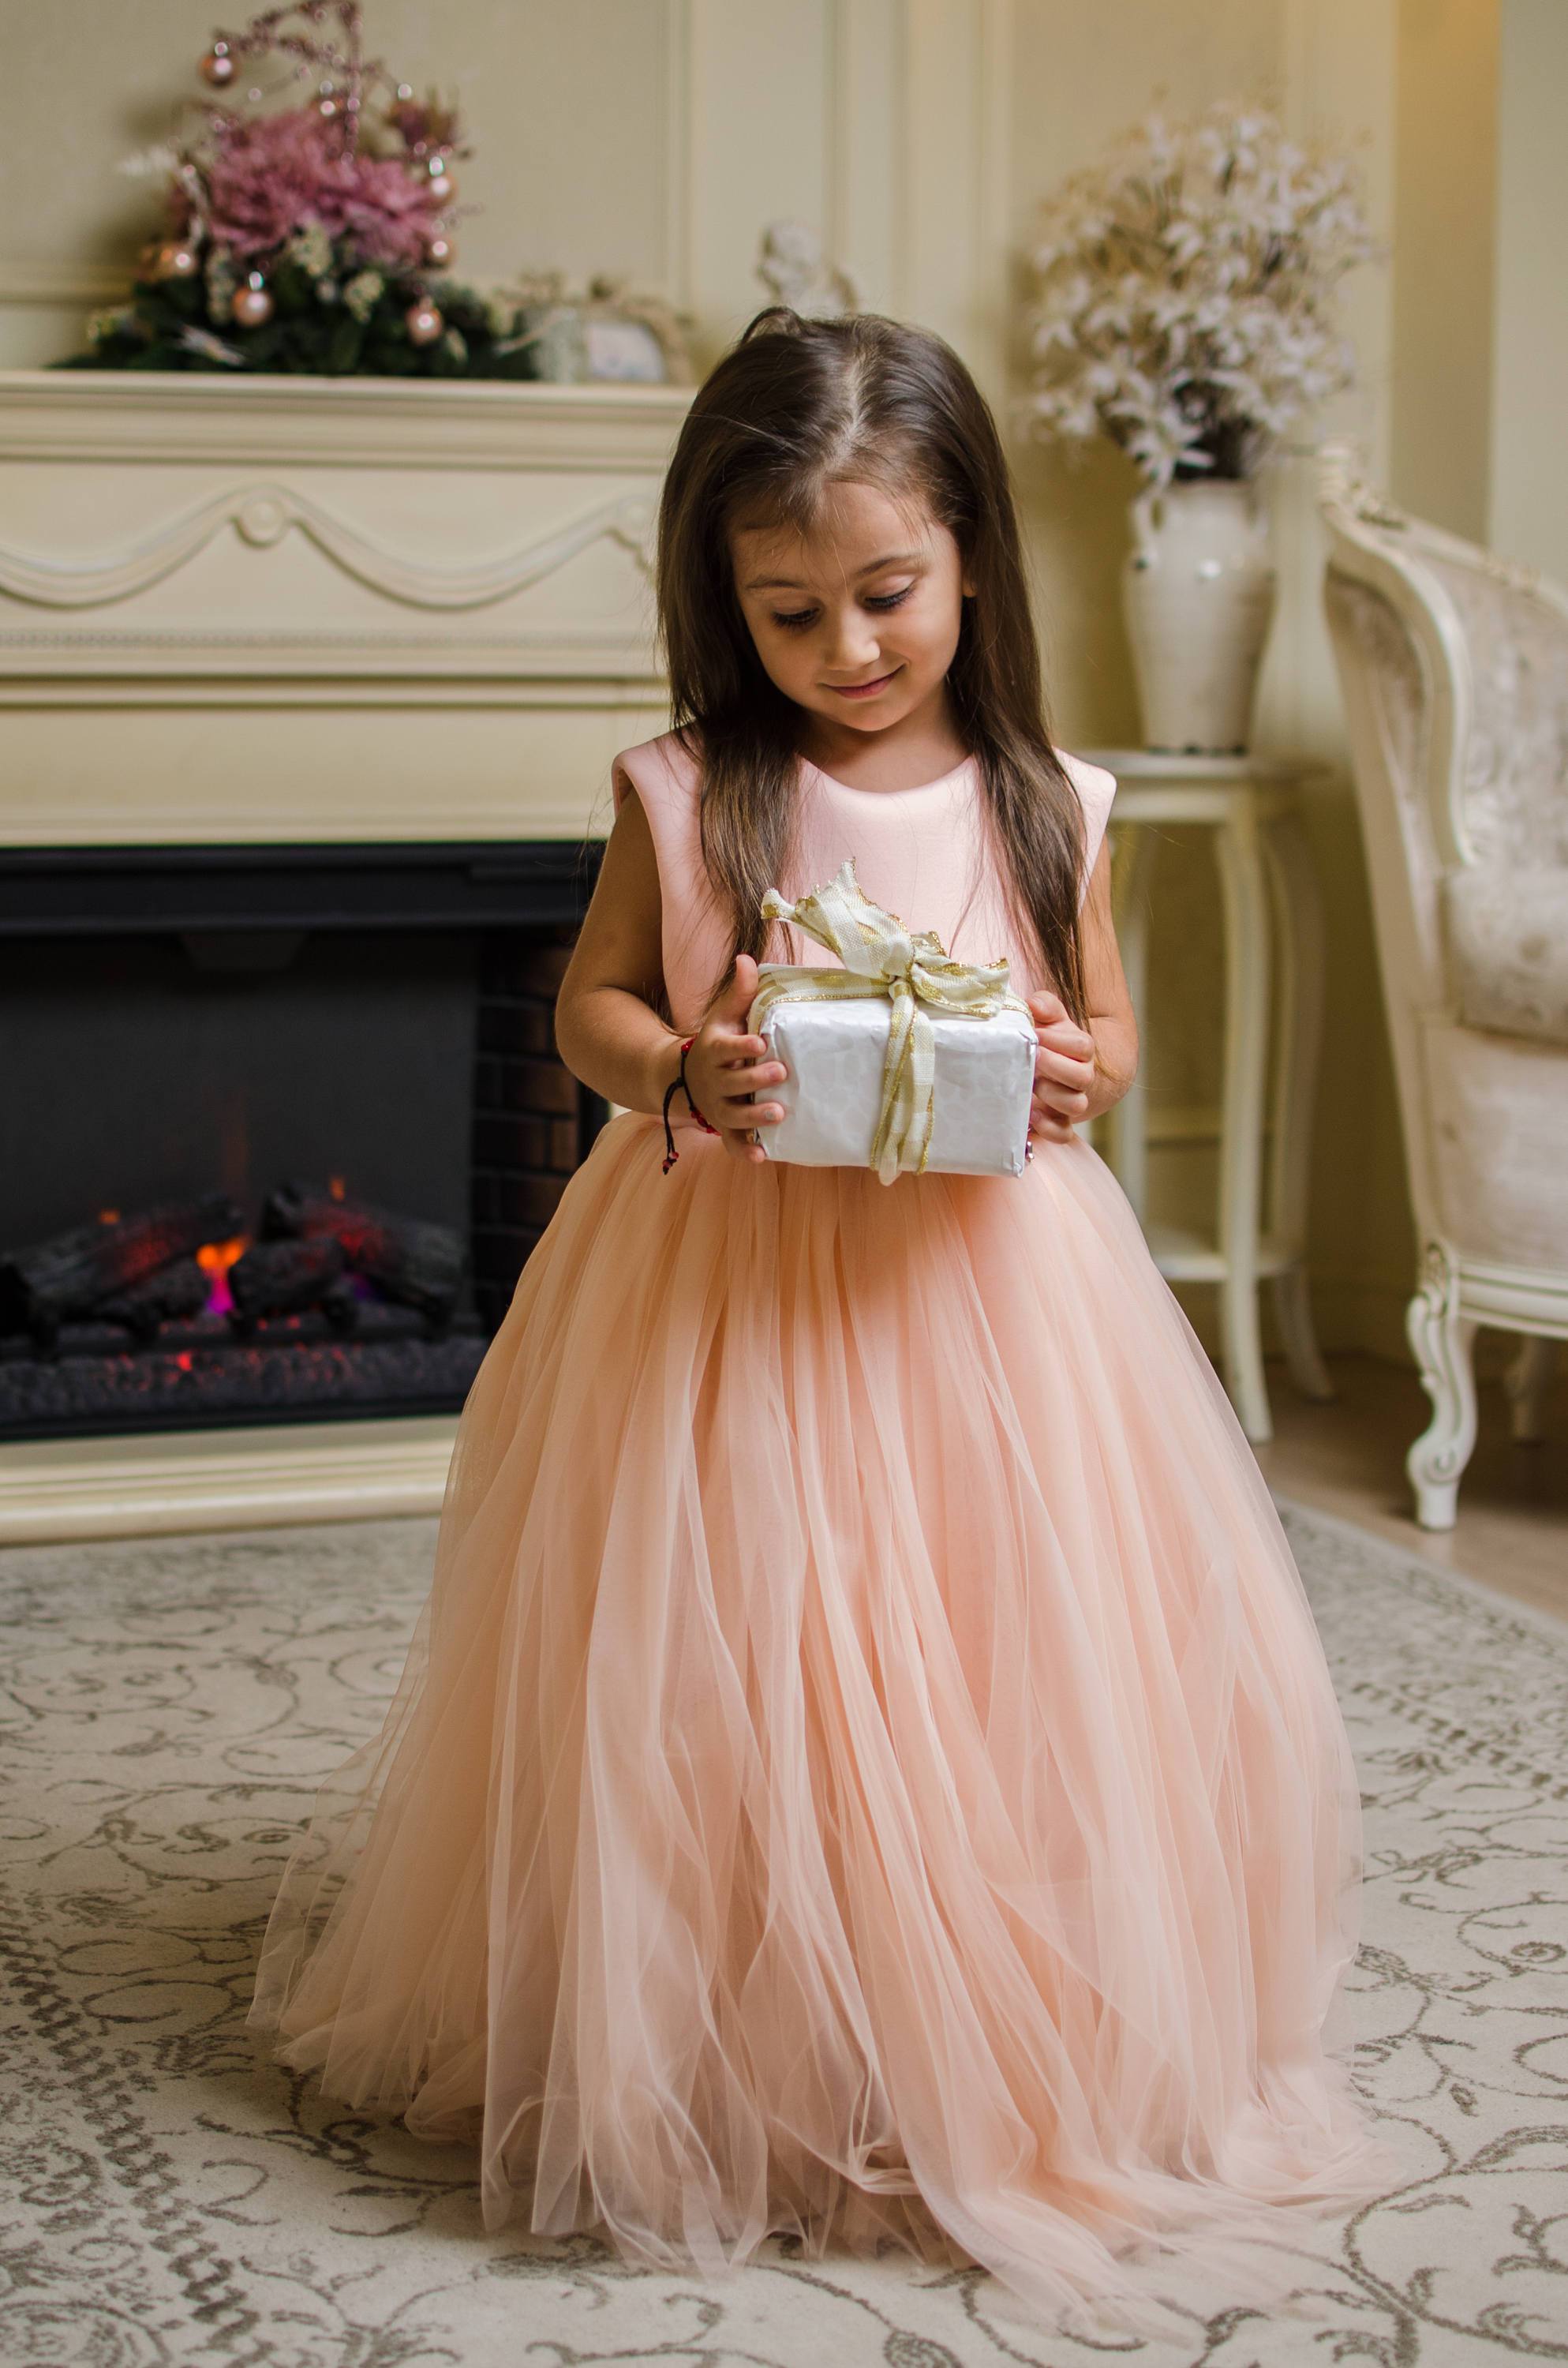 https://www.matchinglook.com/cdn/shop/products/blush-girl-dress-peach-princess-dress-1st-birthday-dress-toddler-gown-dress-girl-flower-dress-first-communion-dress-christening-dress-matchinglook-486889.jpg?v=1627117198